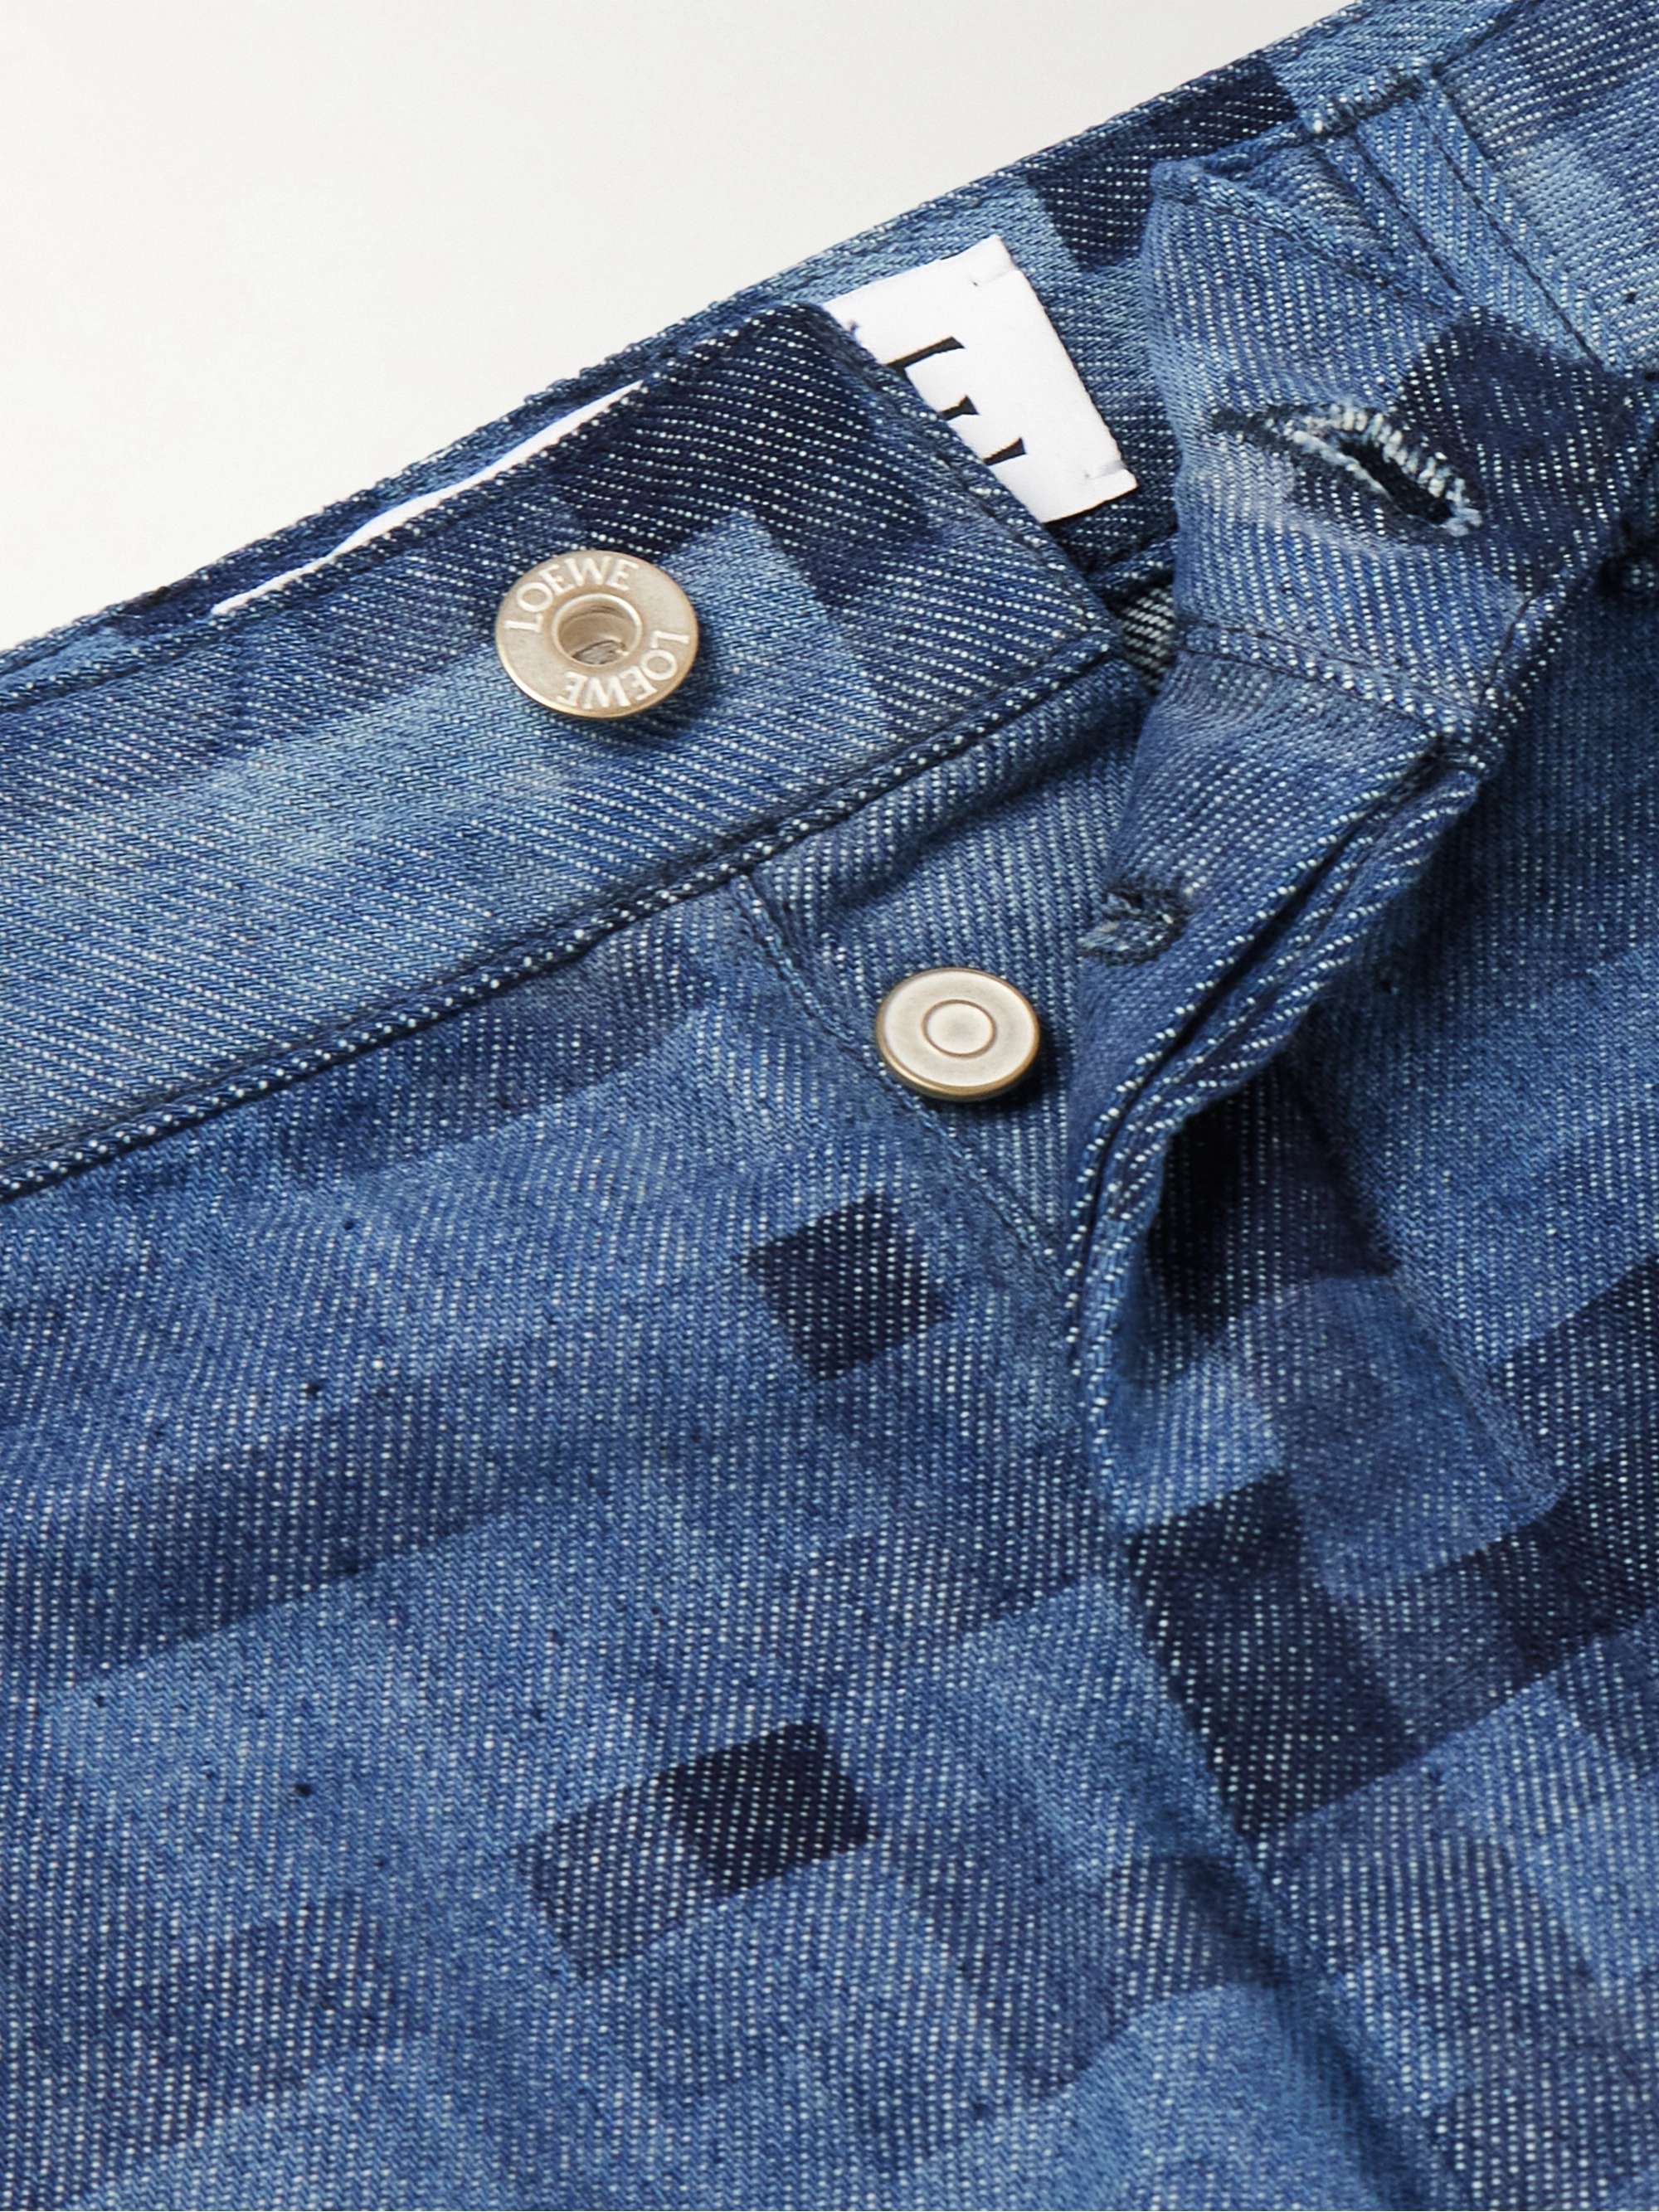 LOEWE Pixelated Straight-Leg Printed Jeans for Men | MR PORTER